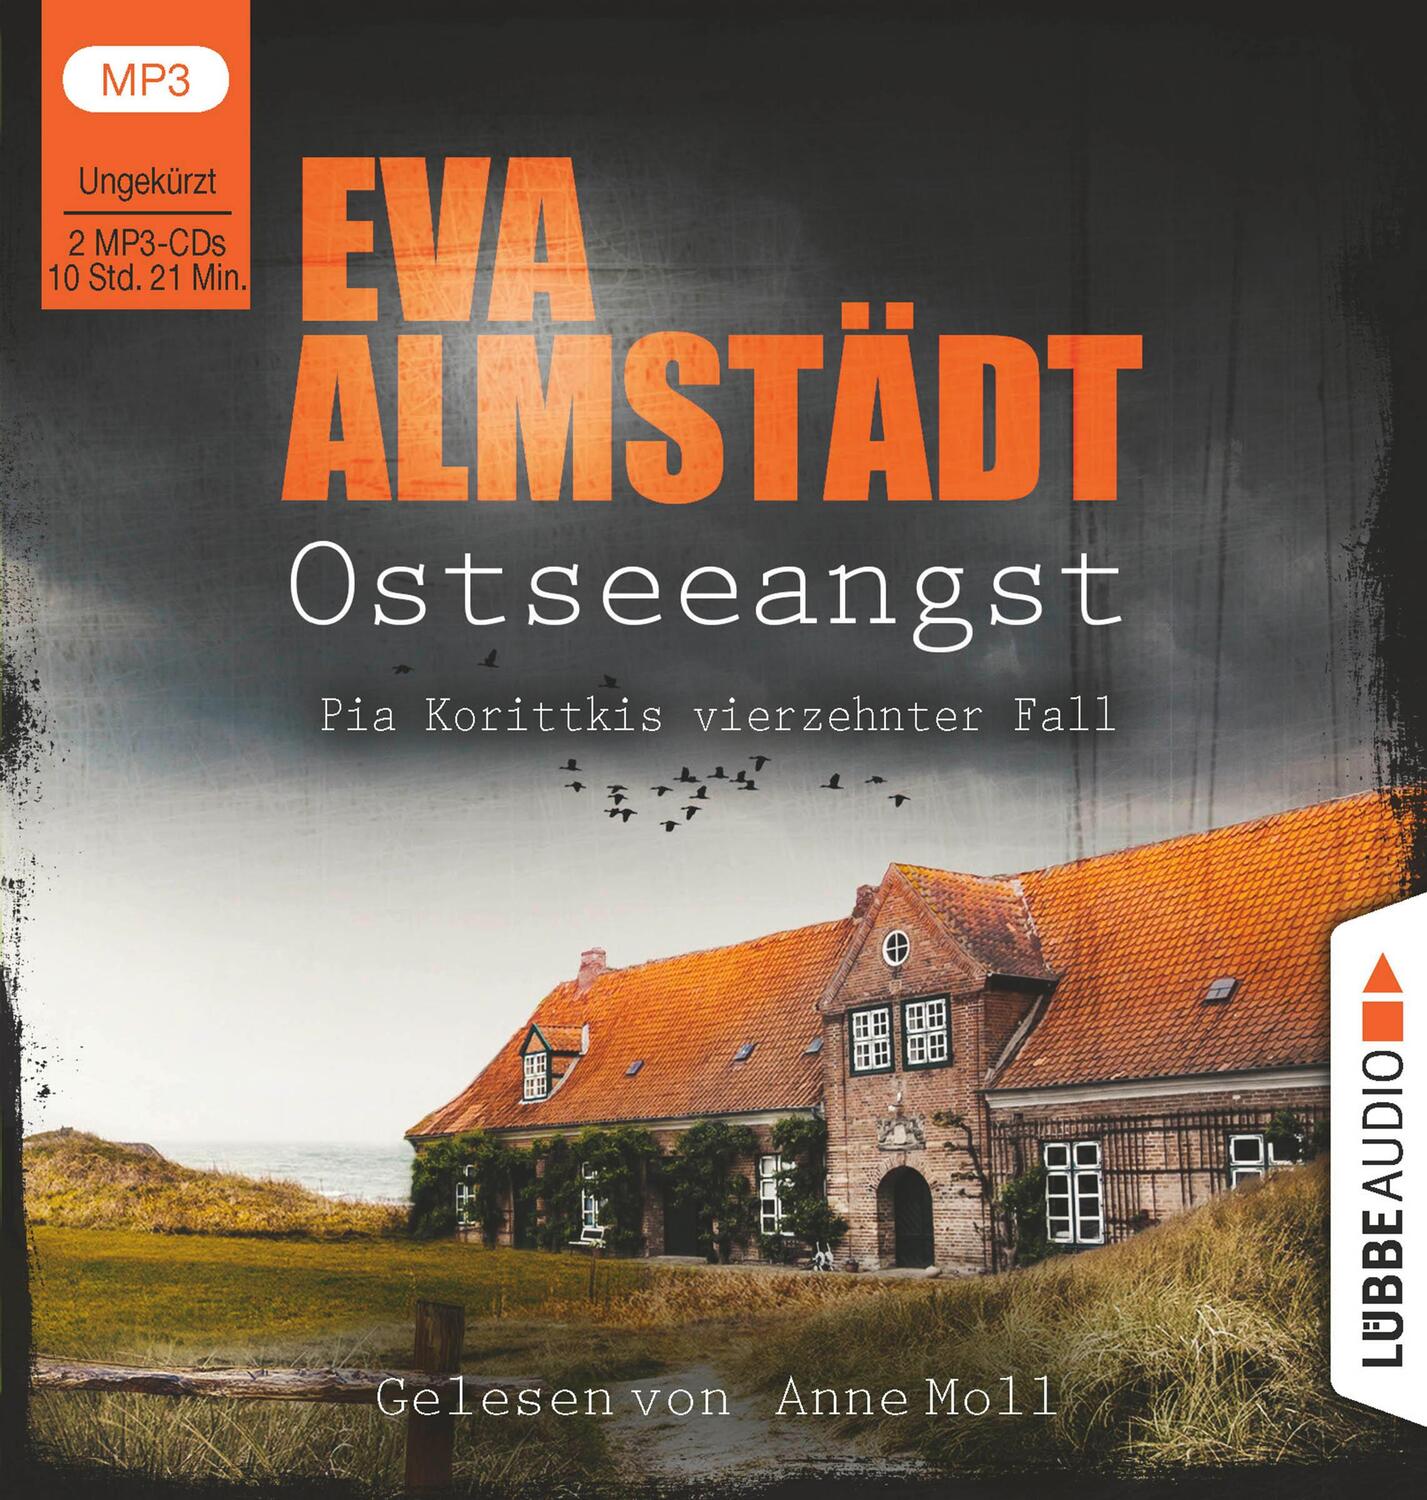 Cover: 9783785783511 | Ostseeangst | Pia Korittkis vierzehnter Fall. Ungekürzt. | Almstädt